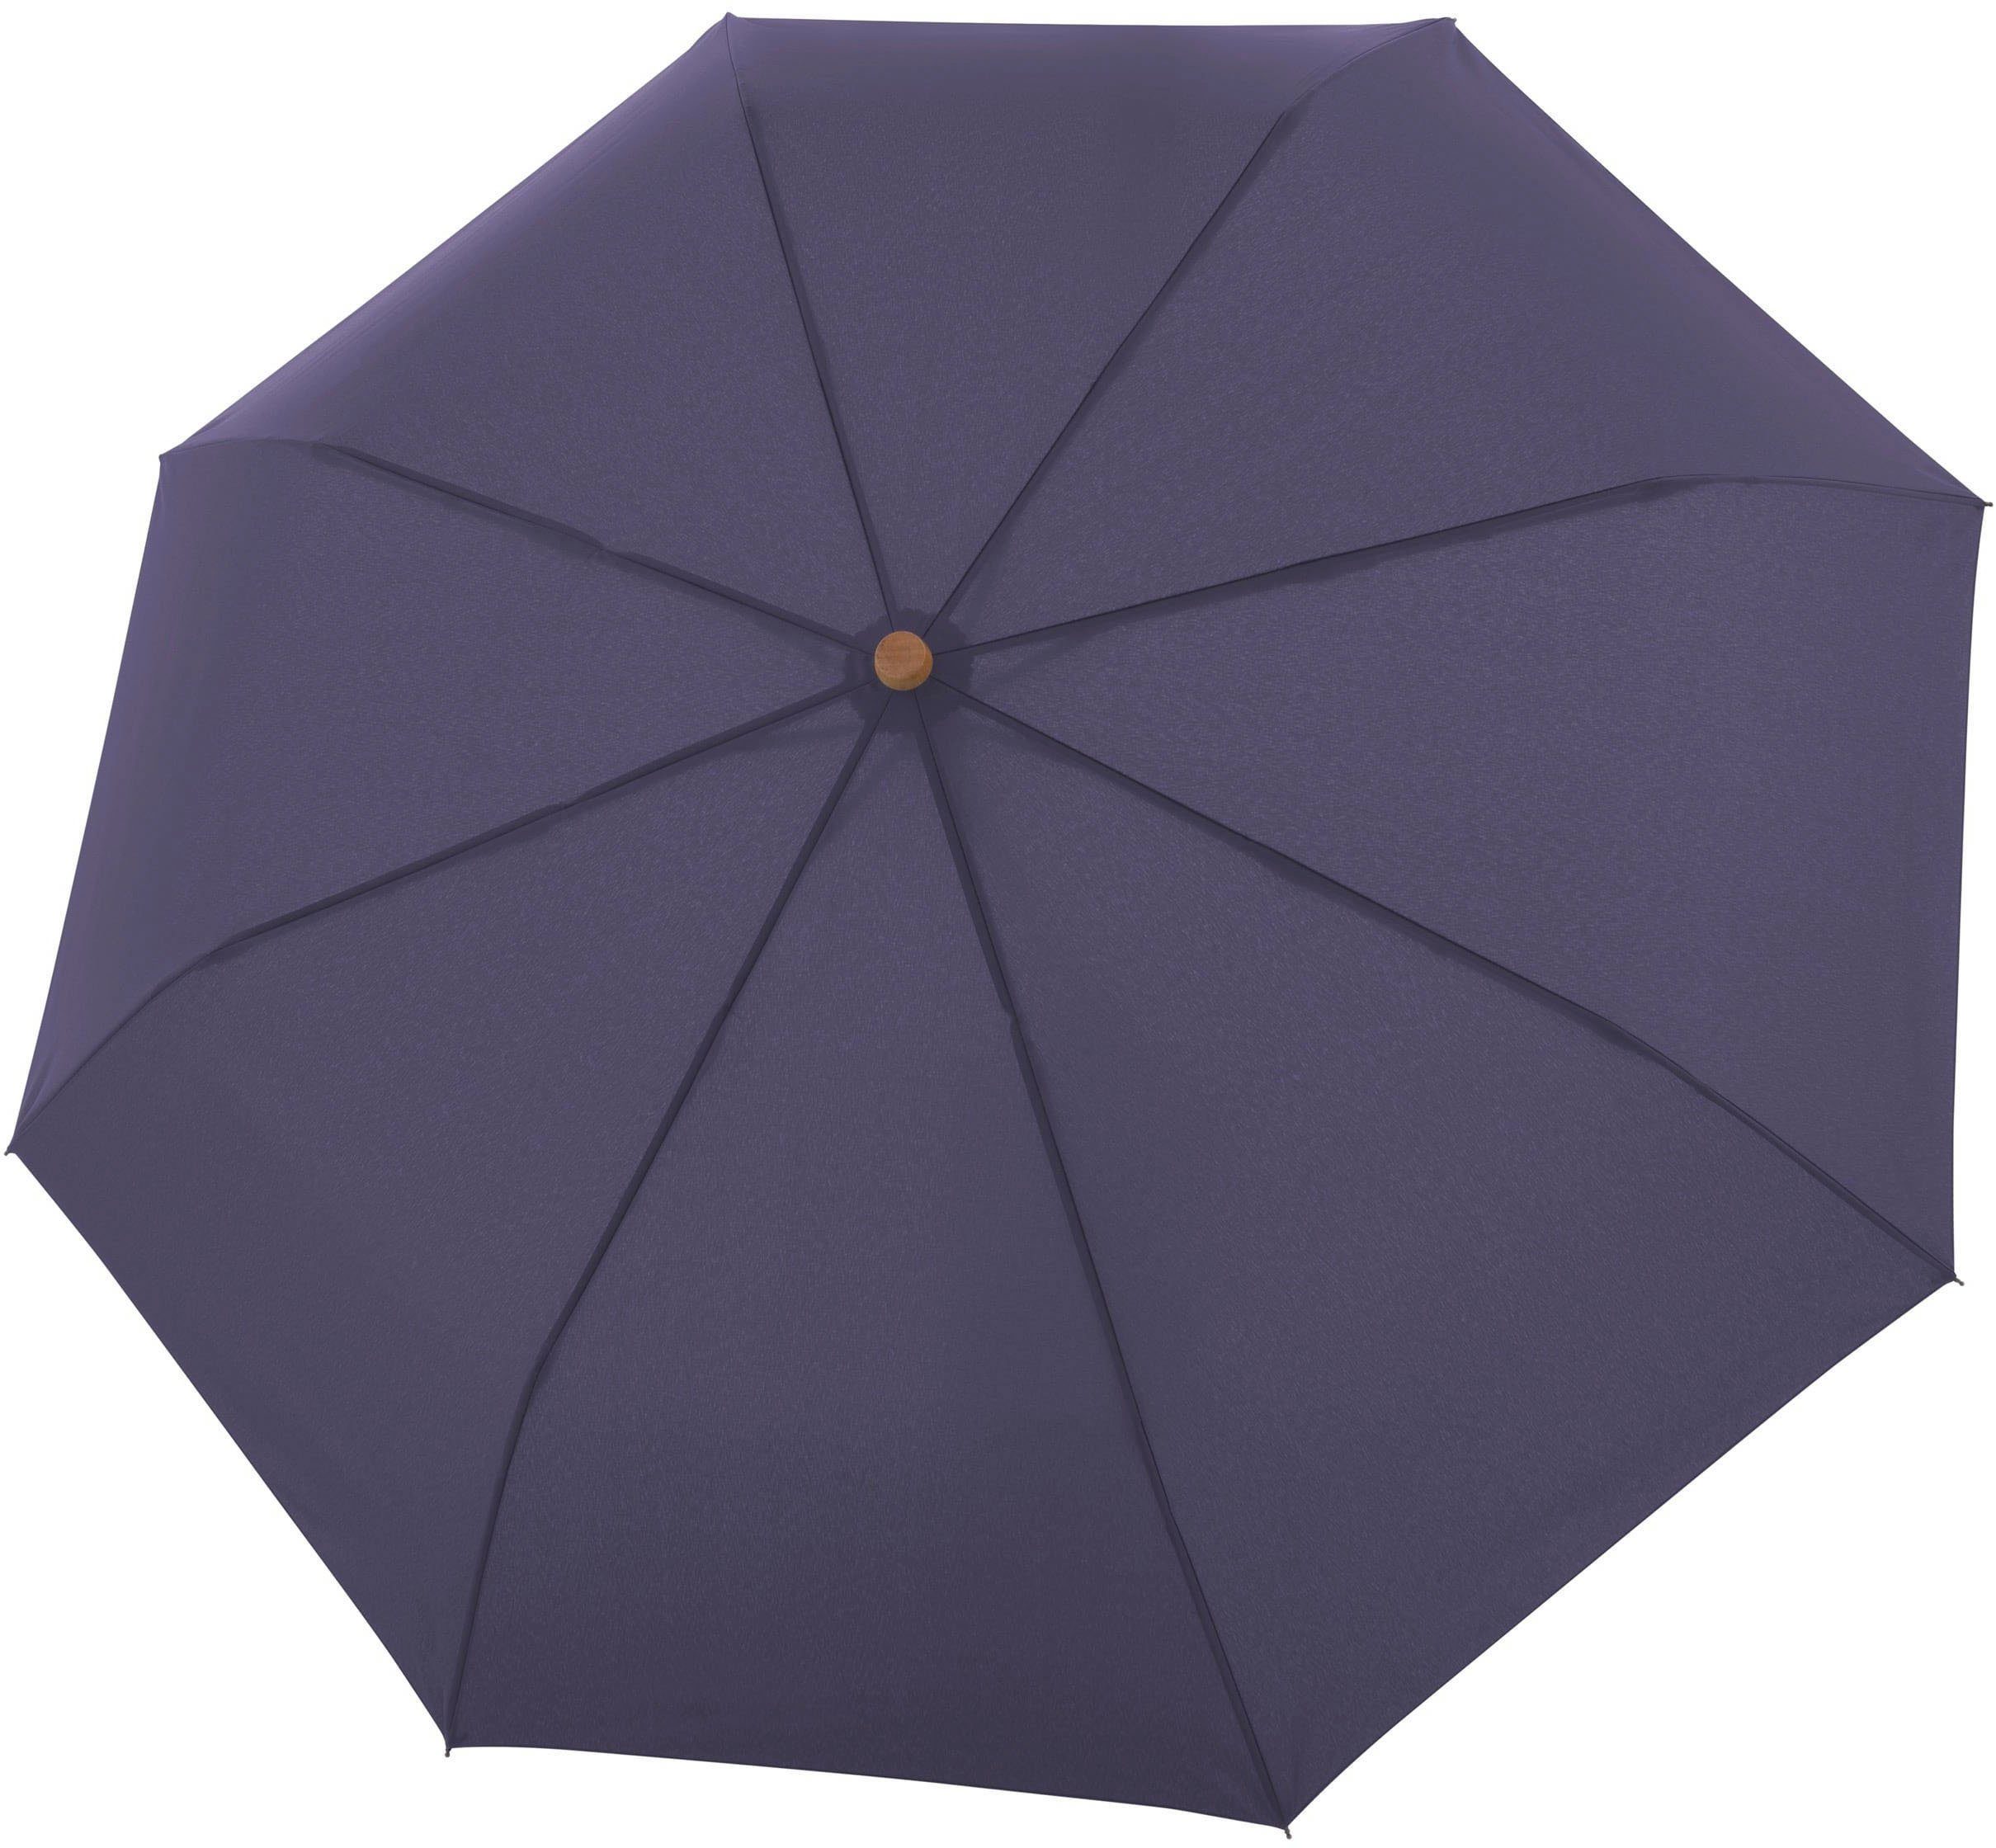 doppler® Taschenregenschirm schützt Material Wald - aus Magic mit Griff purple, recyceltem uni, nature perfect weltweit aus FSC®